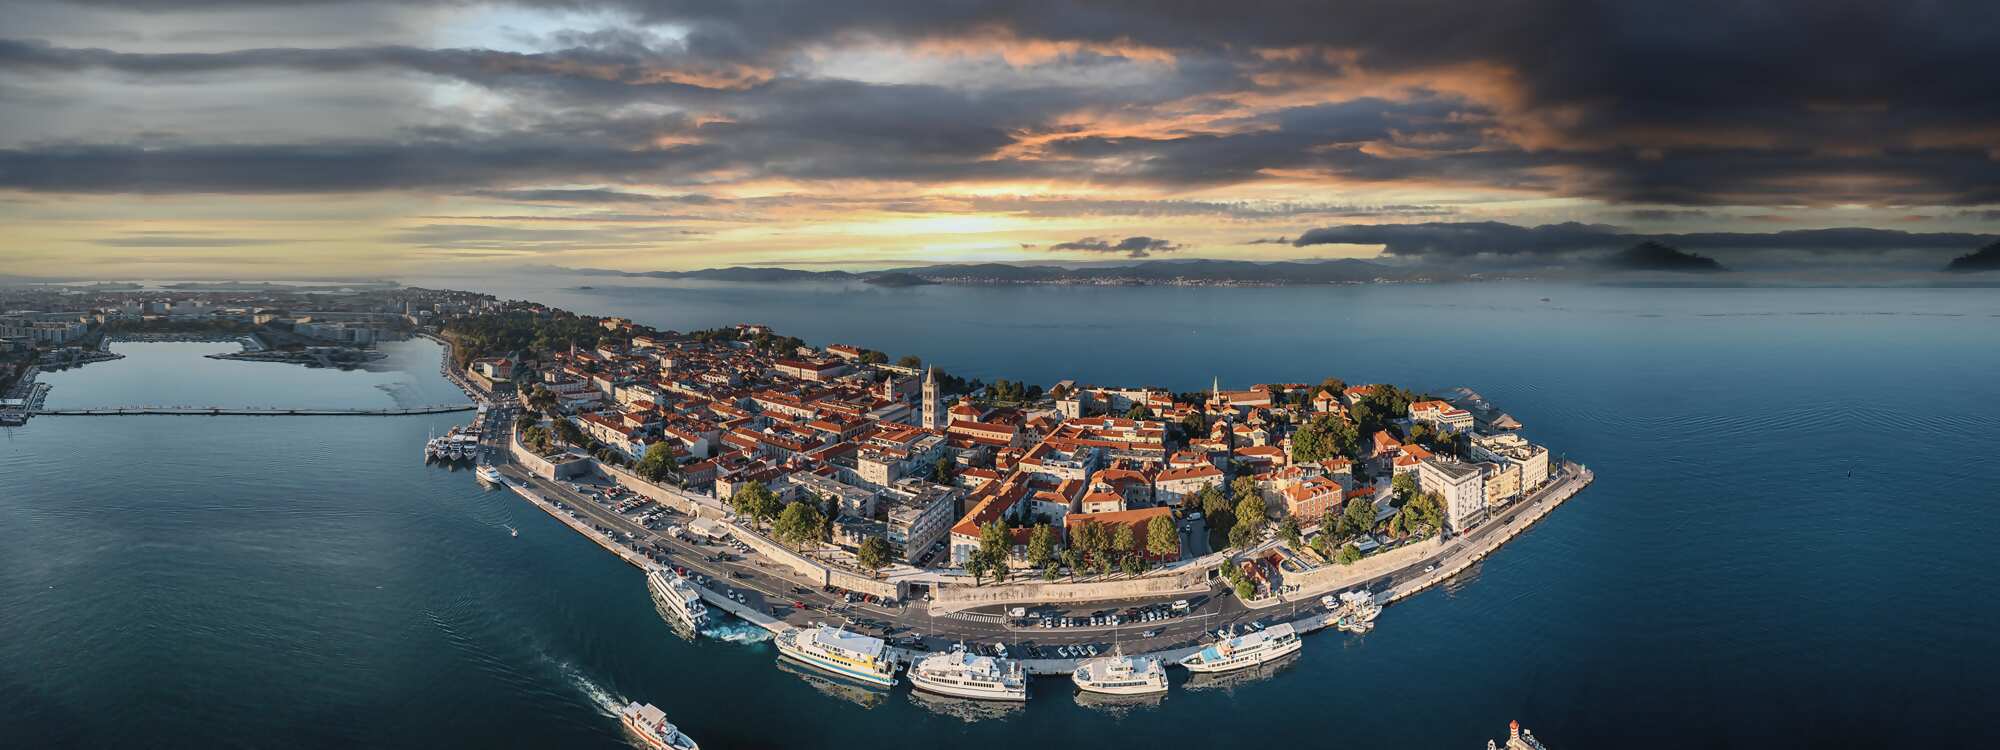 Die historische Stadt Zadar ist das Eingangstor zur Region Dalmatien